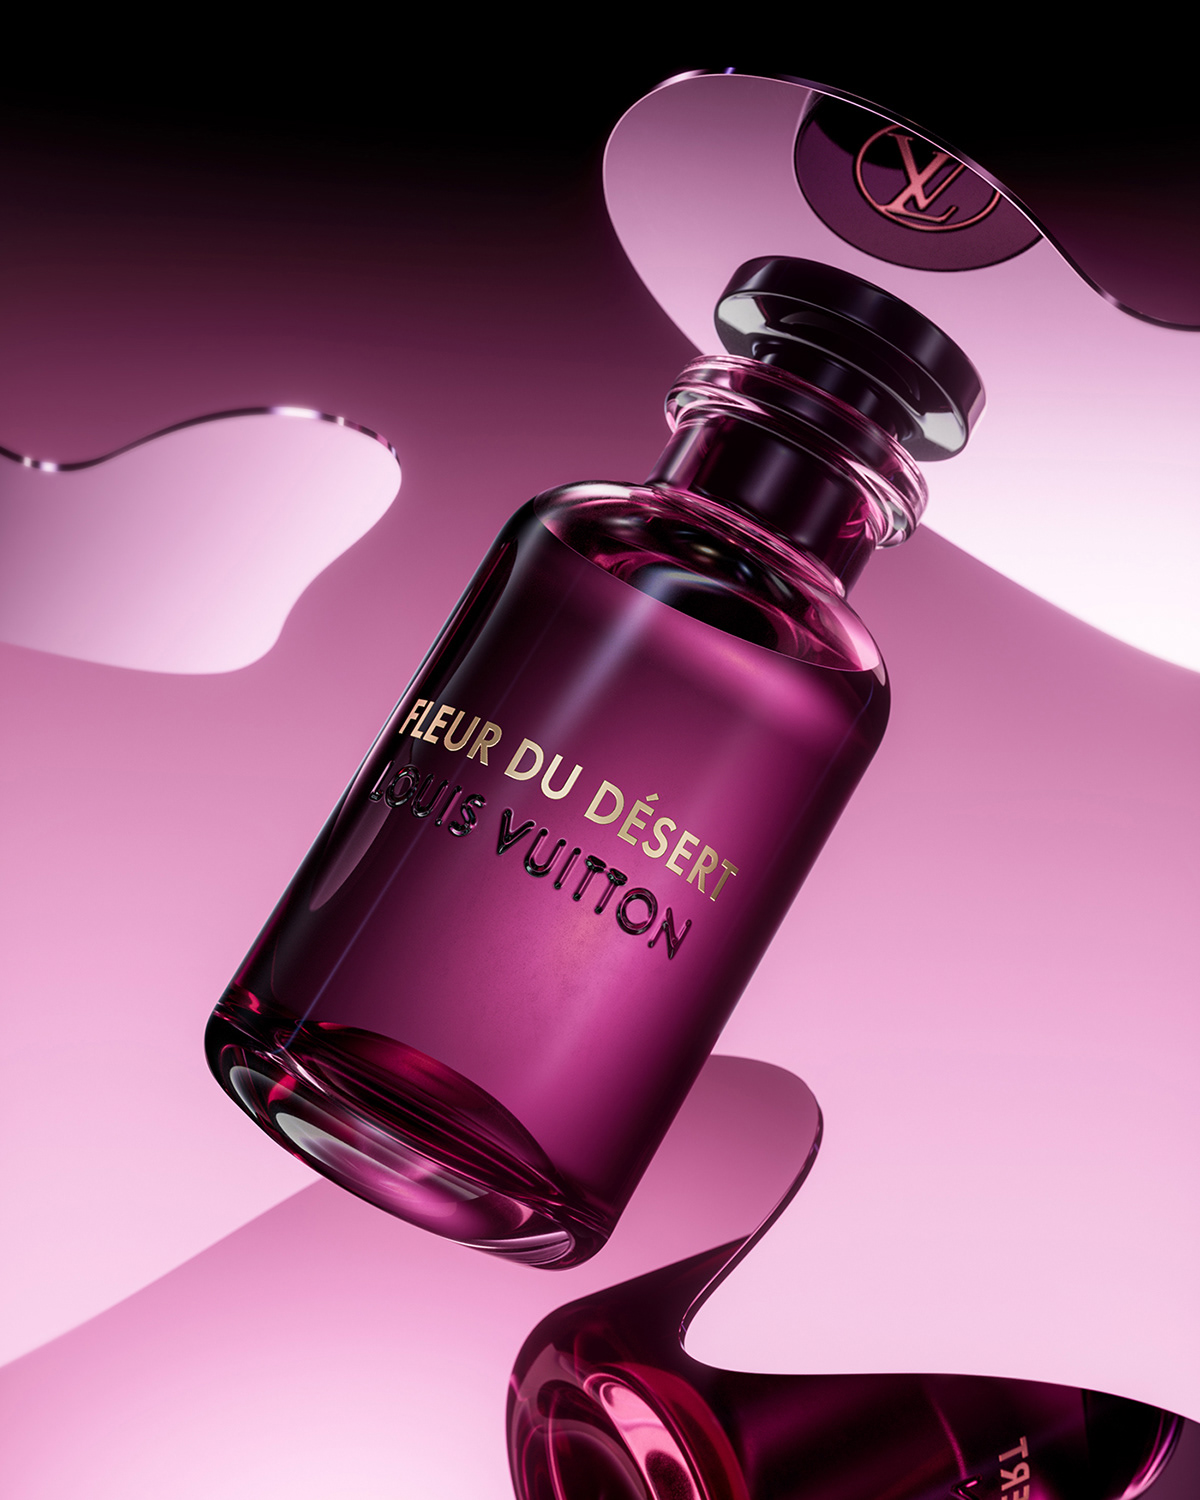 Louis vuitton 3D Render Product Photography perfume cinema4d CGI bottle beauty